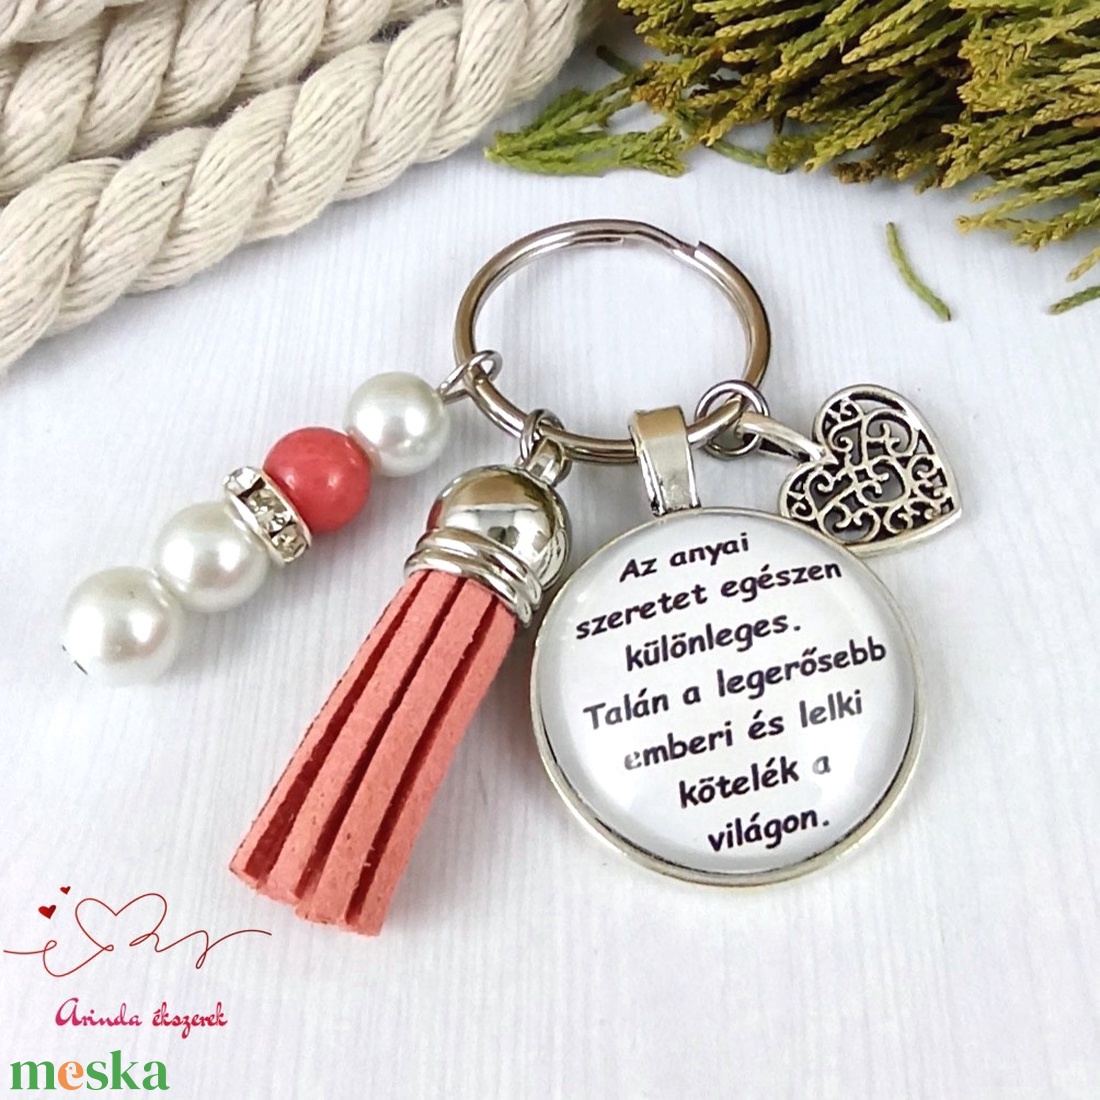 Az anyai szeretet egészen különleges feliratos piros bojtos üveglencsés kulcstartó táskadísz karácsony  - táska & tok - kulcstartó & táskadísz - kulcstartó - Meska.hu